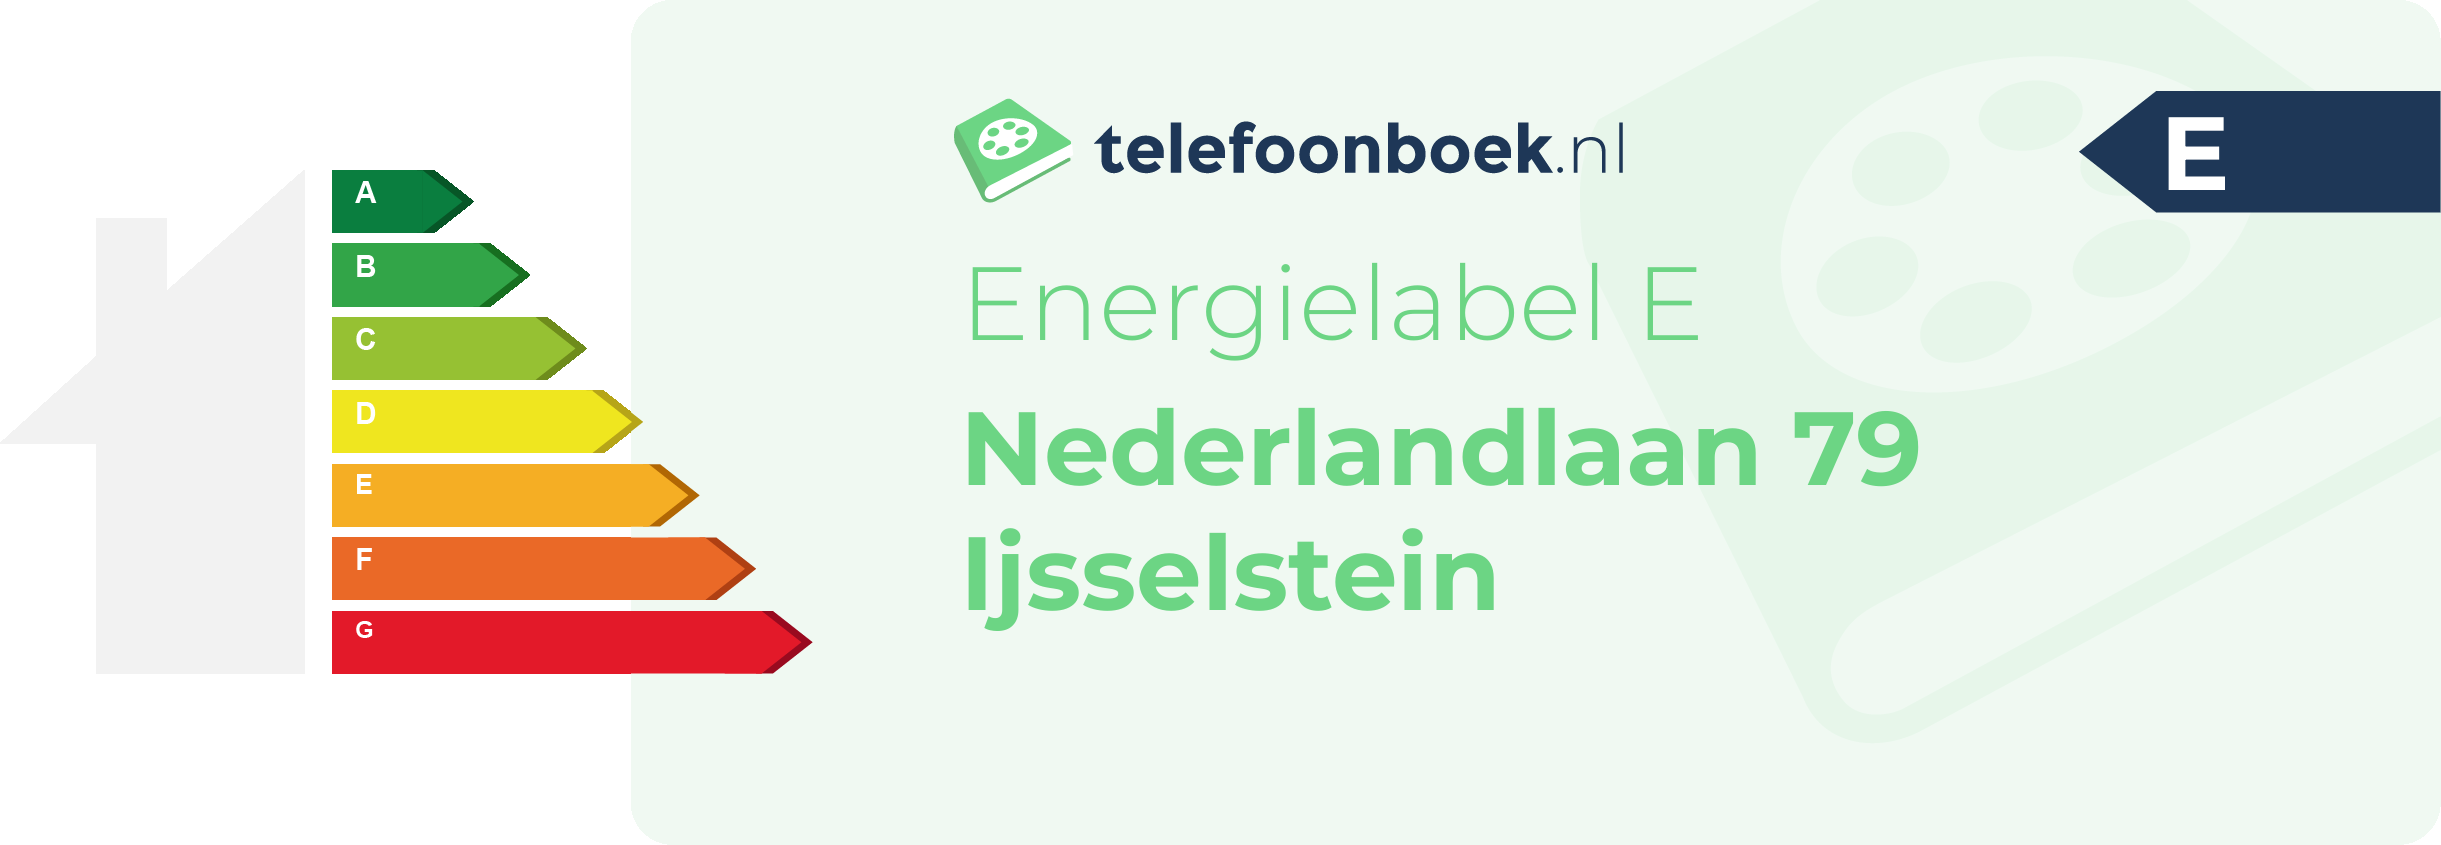 Energielabel Nederlandlaan 79 Ijsselstein